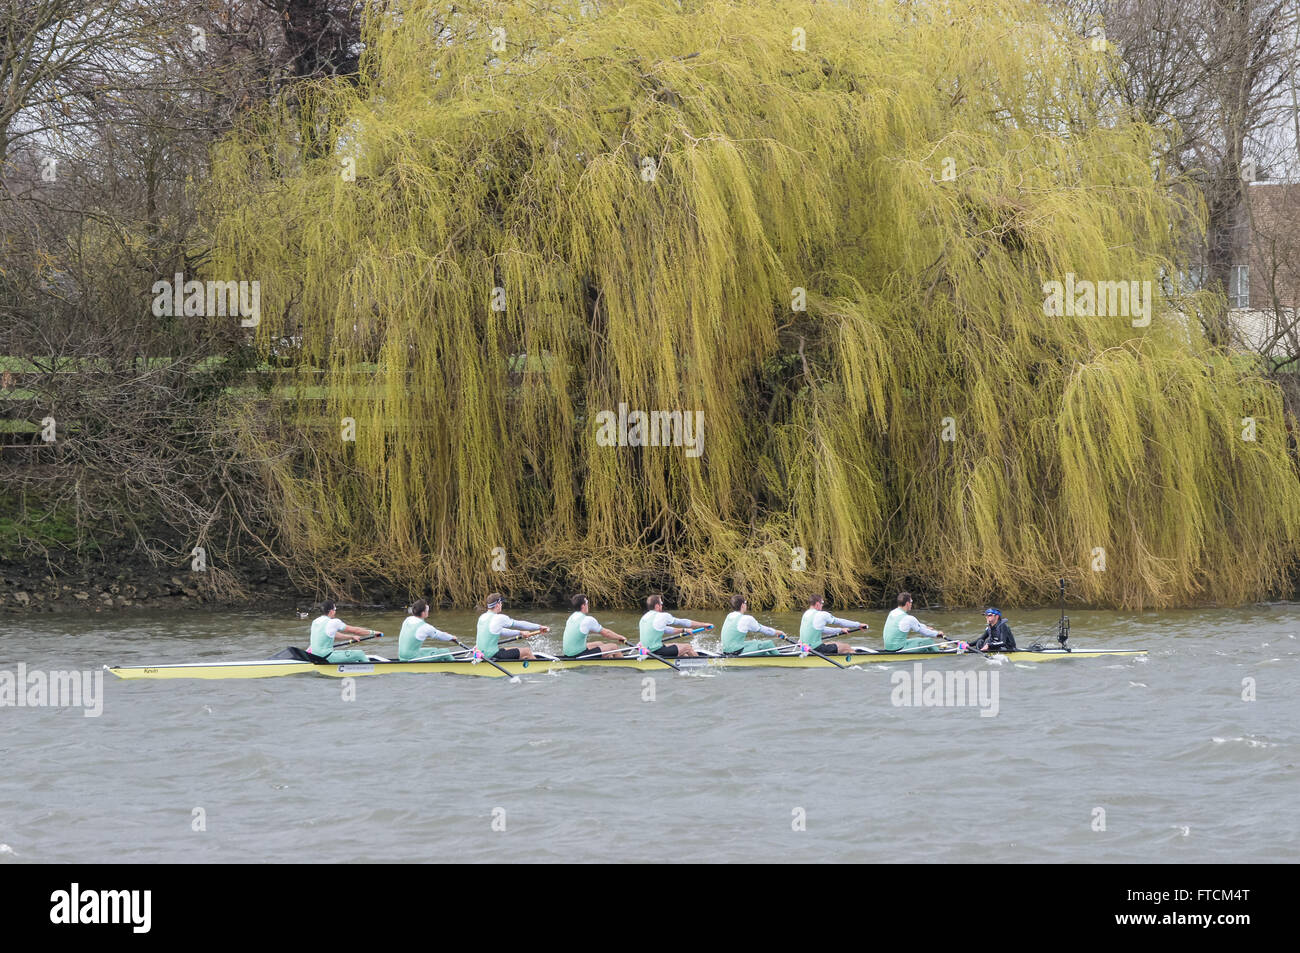 Oxford und Cambridge University Boat Race auf der Themse aus Putney, Mortlakes, London England Vereinigtes Königreich UK Stockfoto